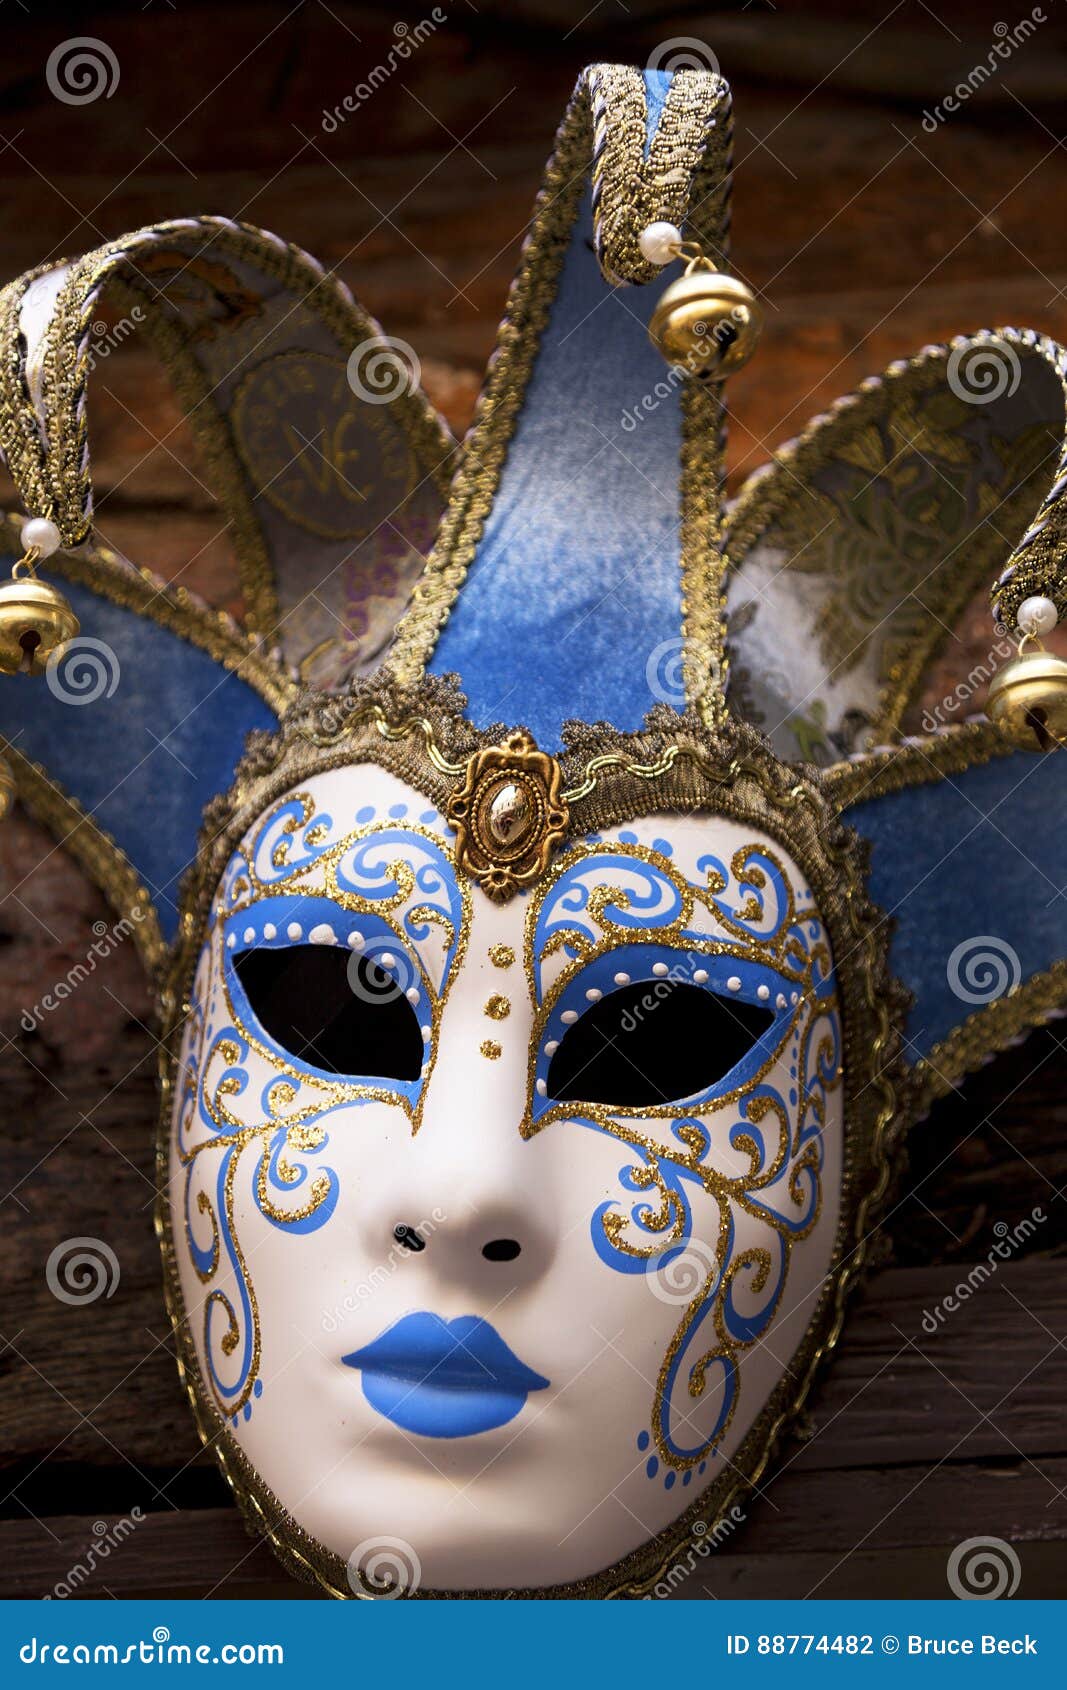 Foto De Stock Máscara Carnaval Venecia Italia, Libre De Derechos